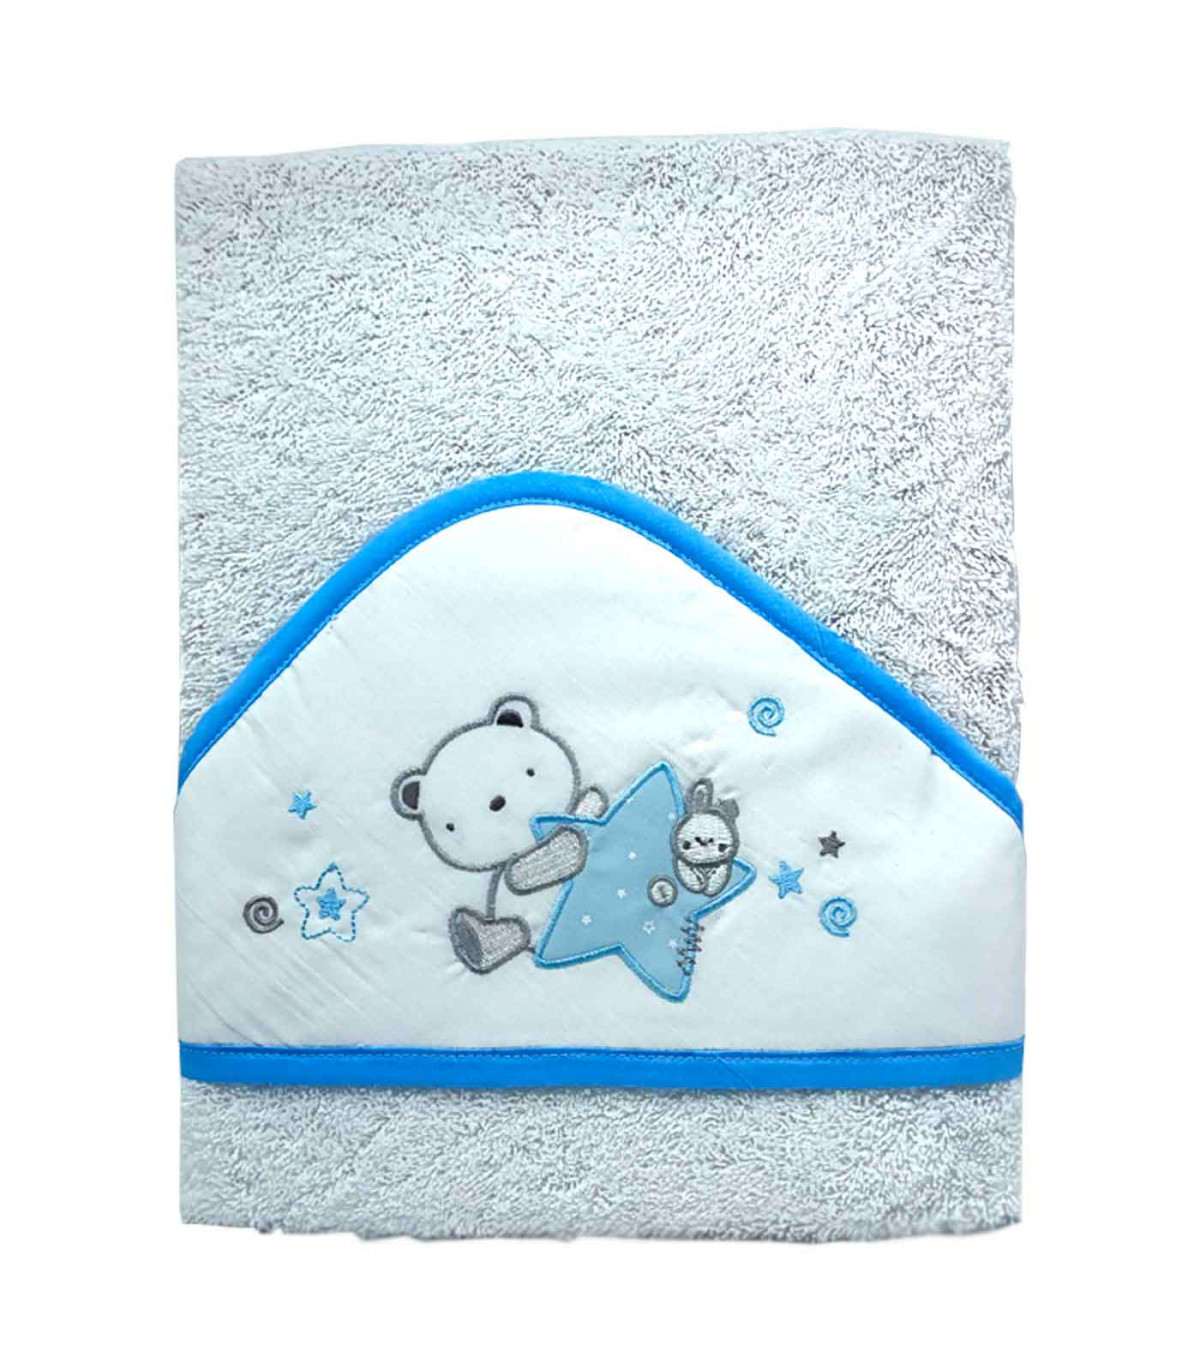 Tradineur - Capa/Toalla de baño para bebé - Diseño de osito con estrella -  Garantiza el confort del bebé - 100 x 100 cm - Color